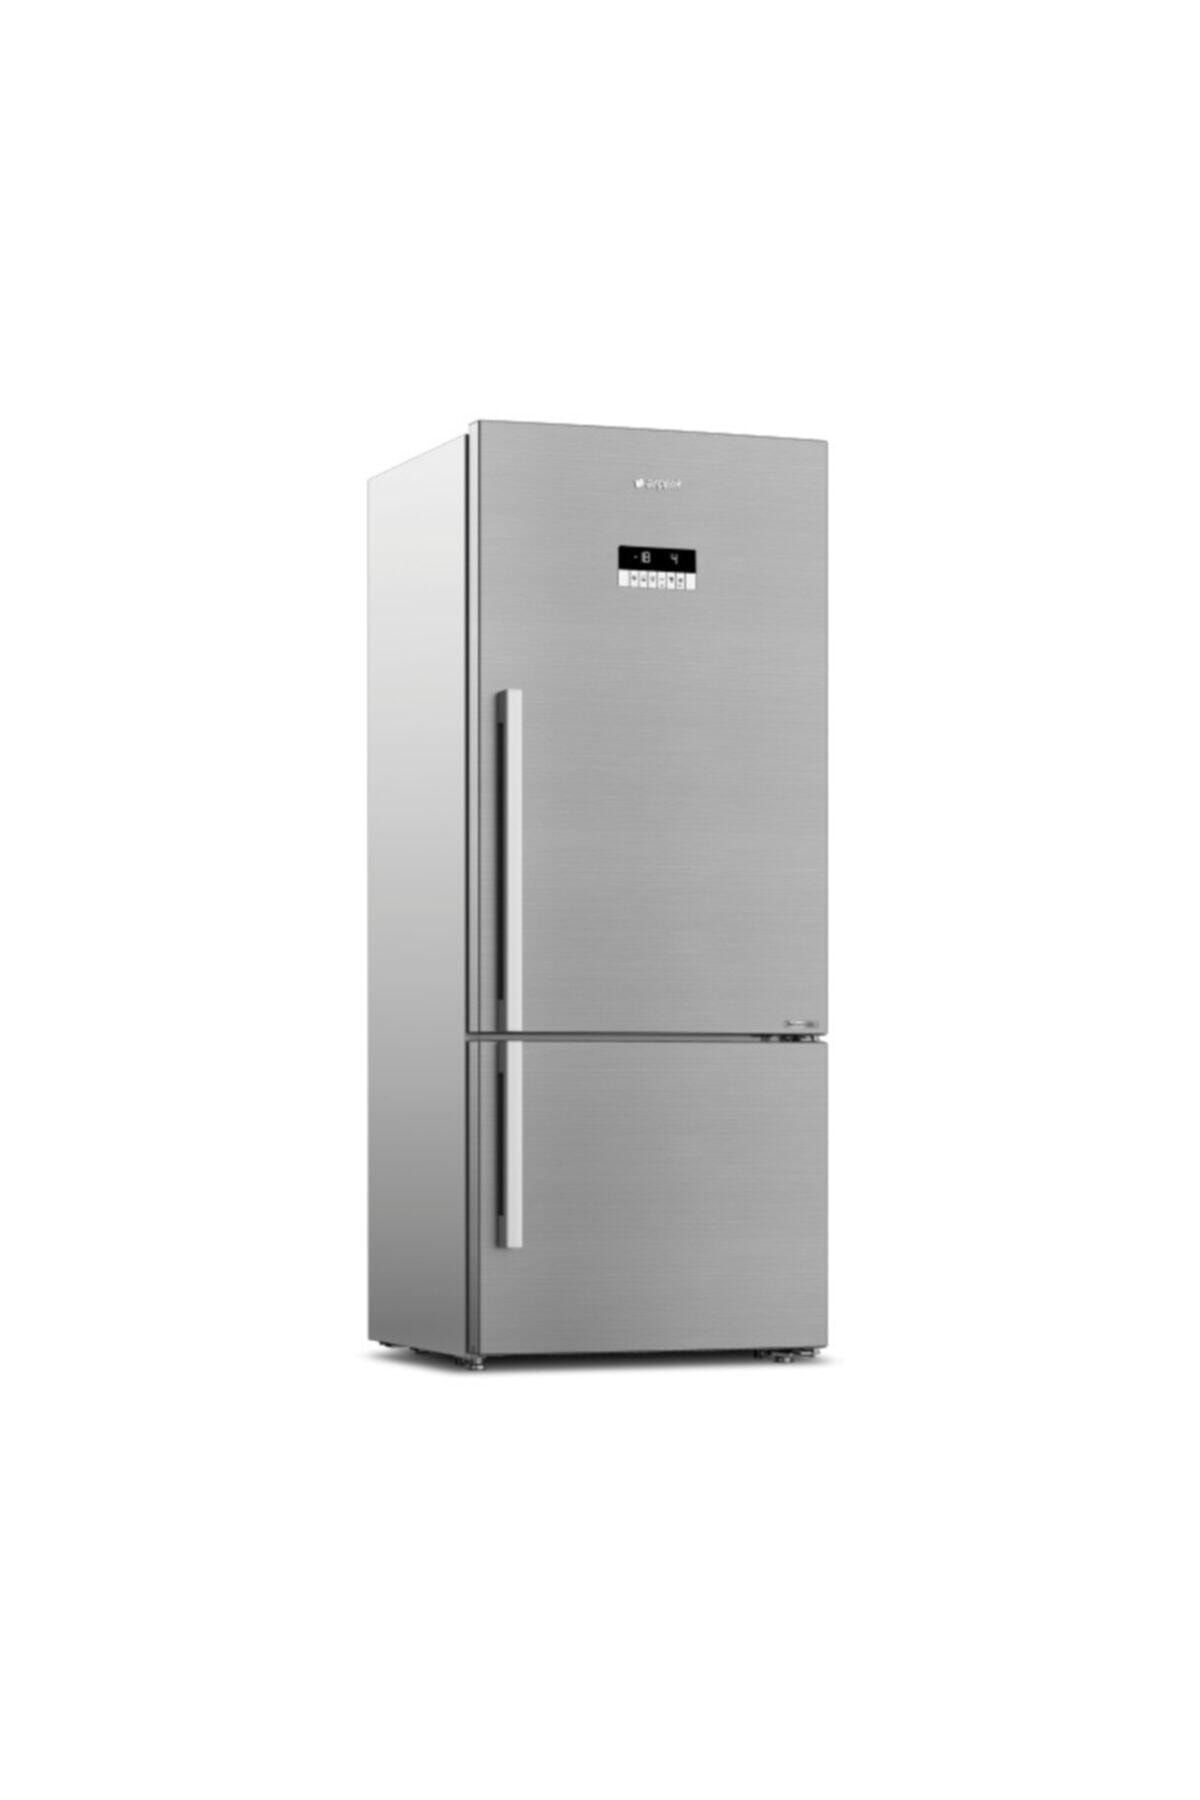 Arçelik 274581 EI Buzdolabı Kombi Tipi No Frost 580 l Inox